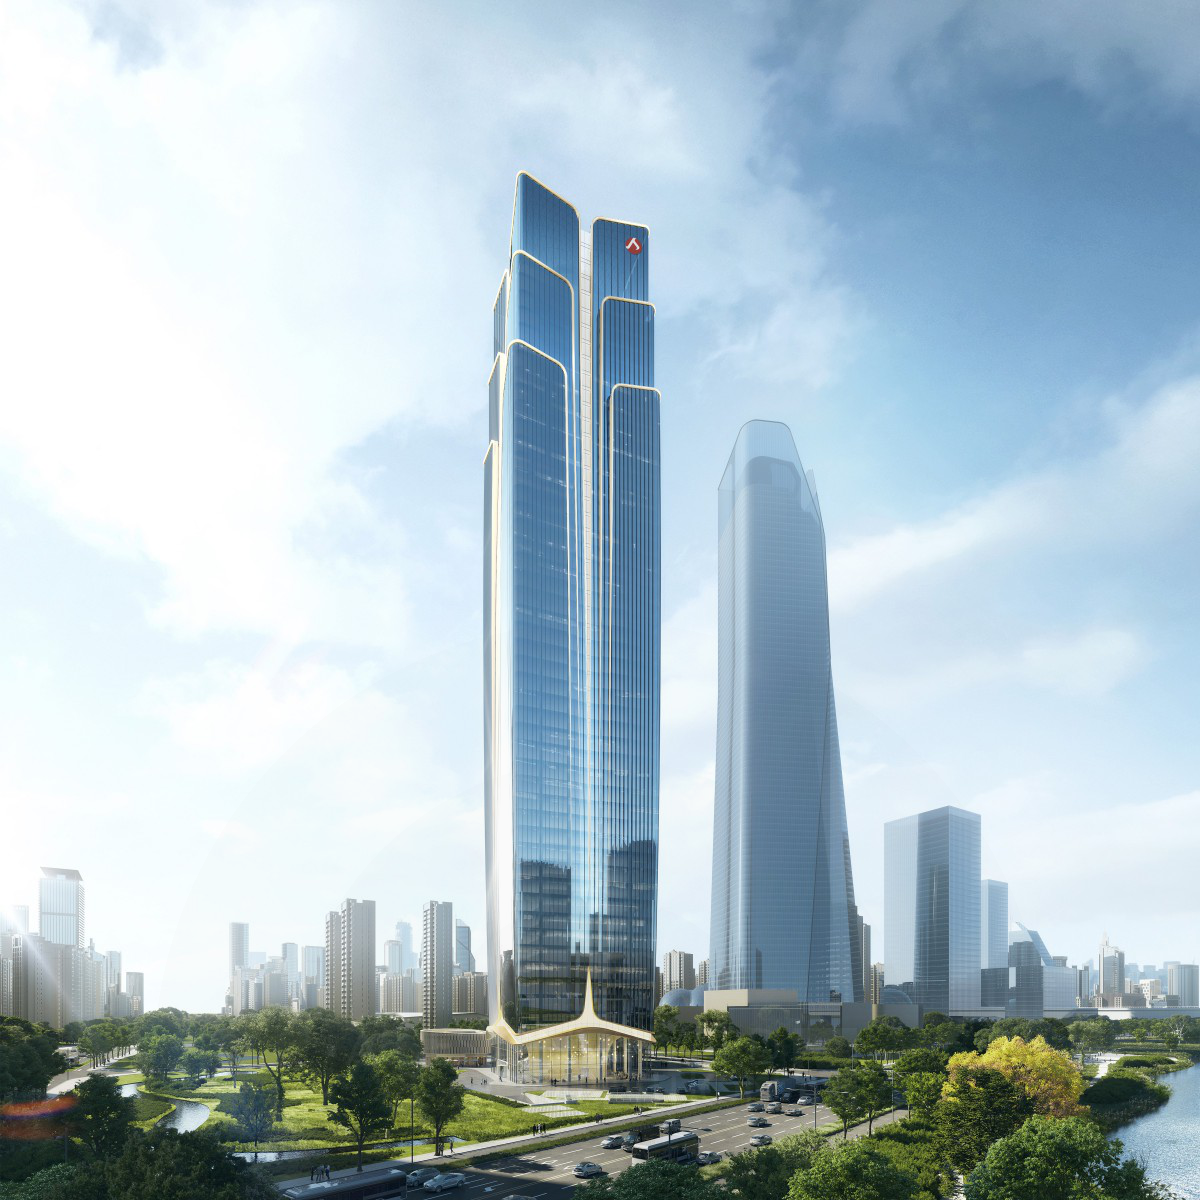 Jinbianruixiang Highrise Office Building by Zhubo Design